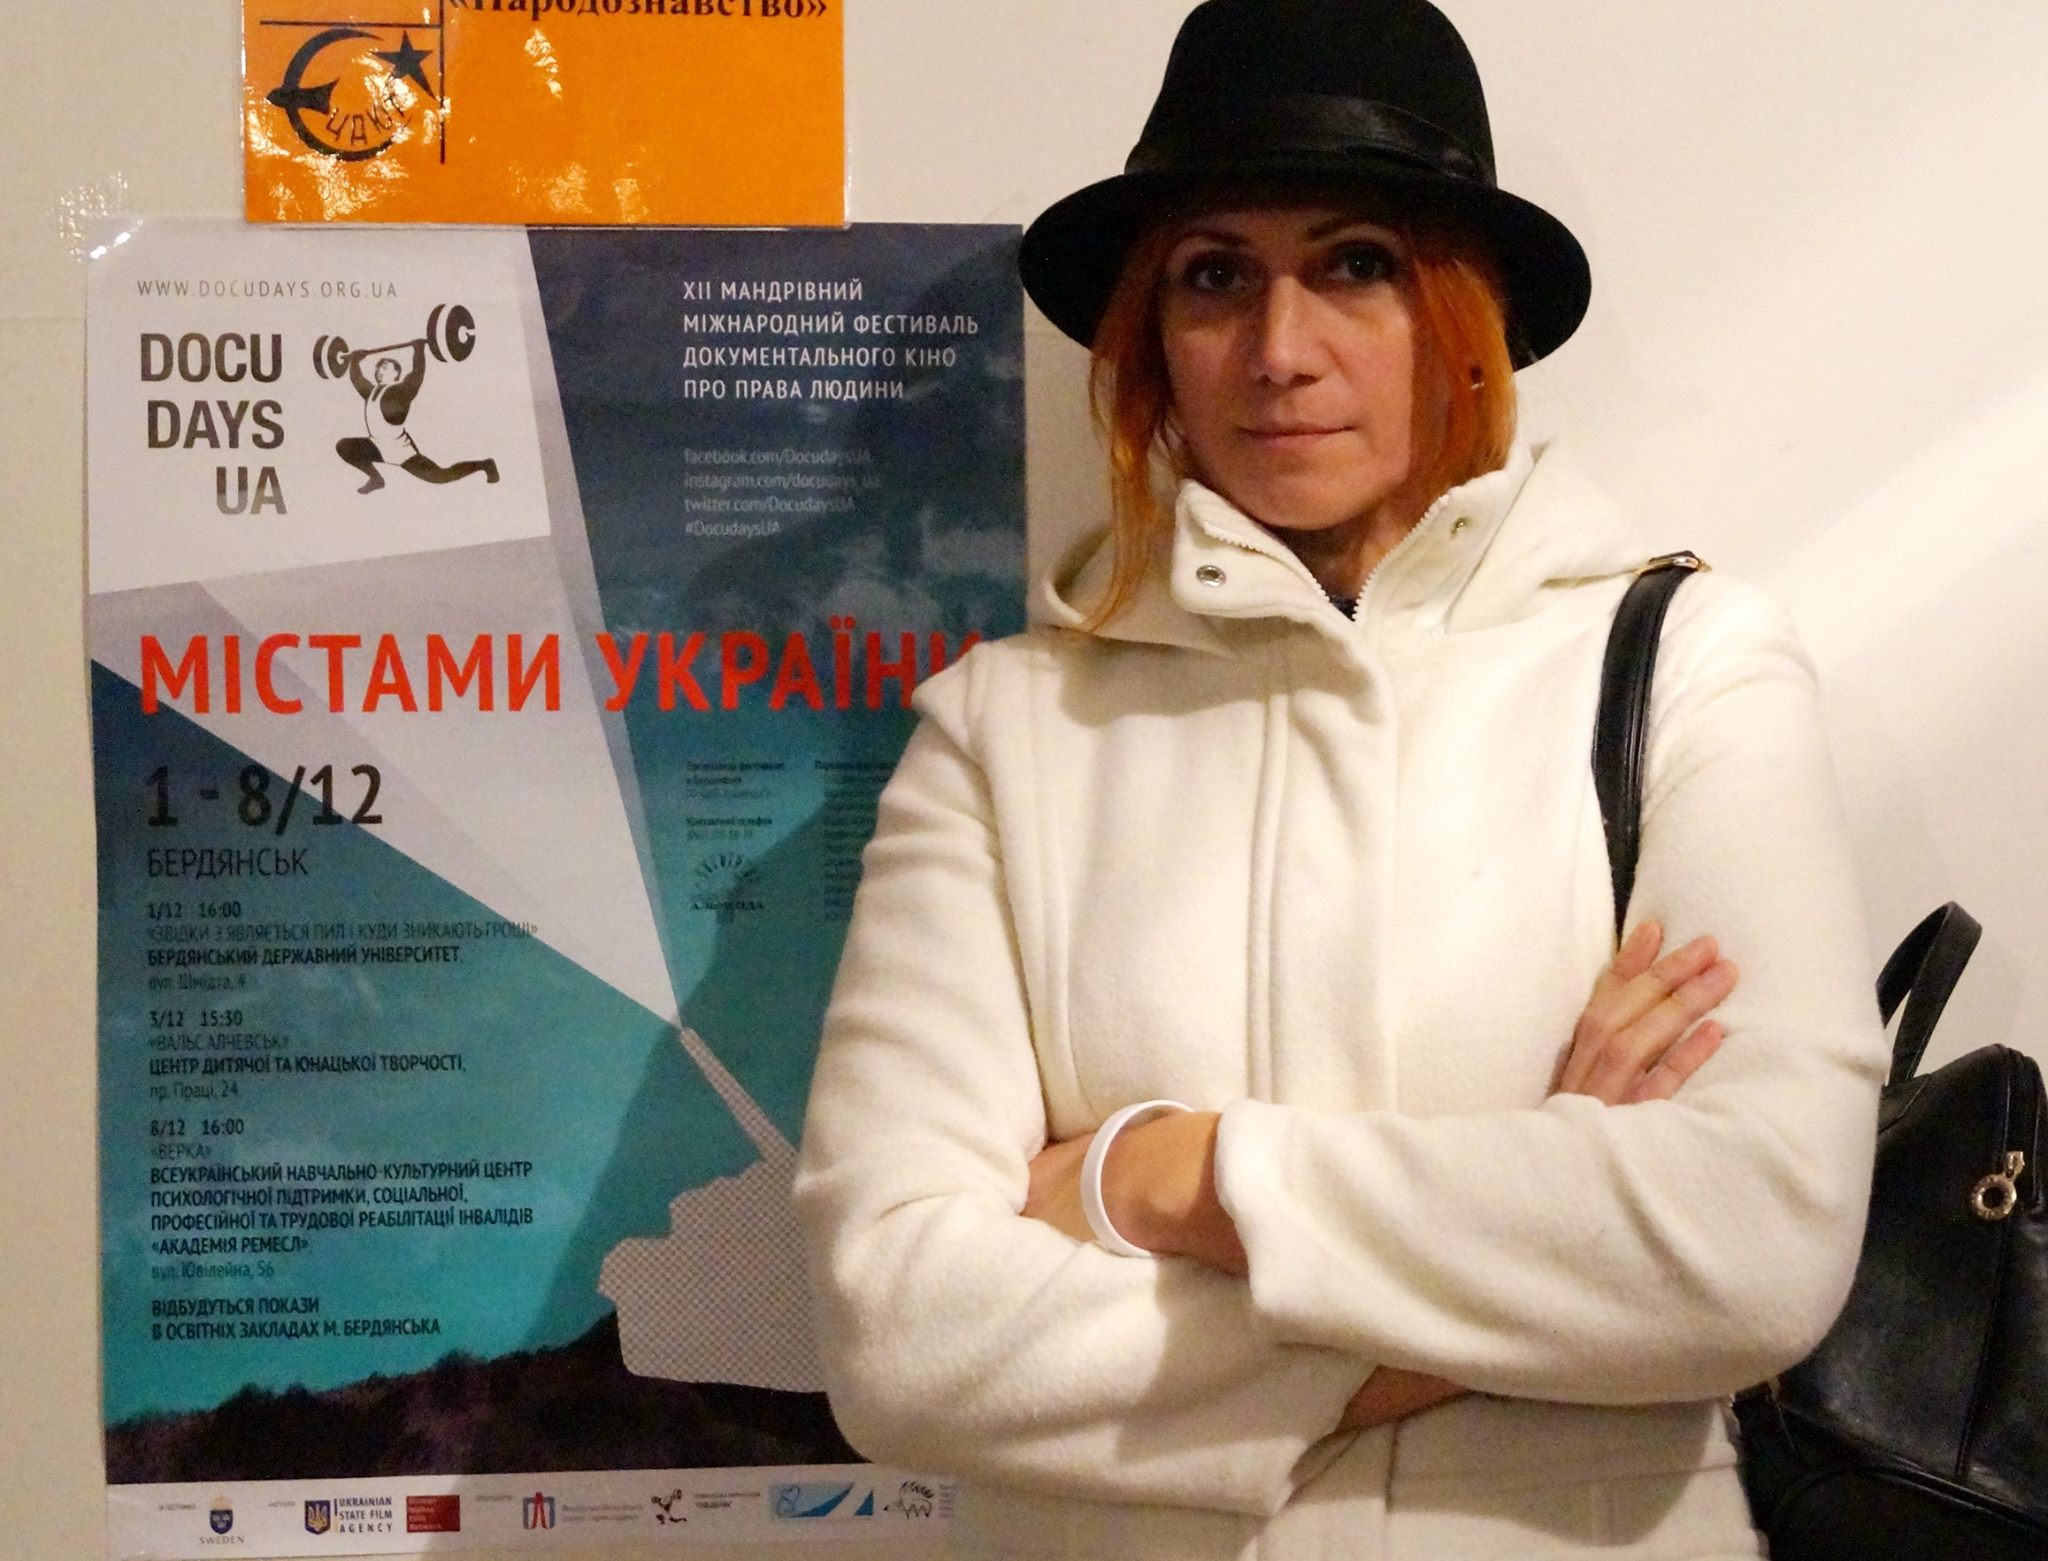 XII Путешествующий фестиваль документального кино про права человека Docudays UA прибыл в Бердянск - картинка 7